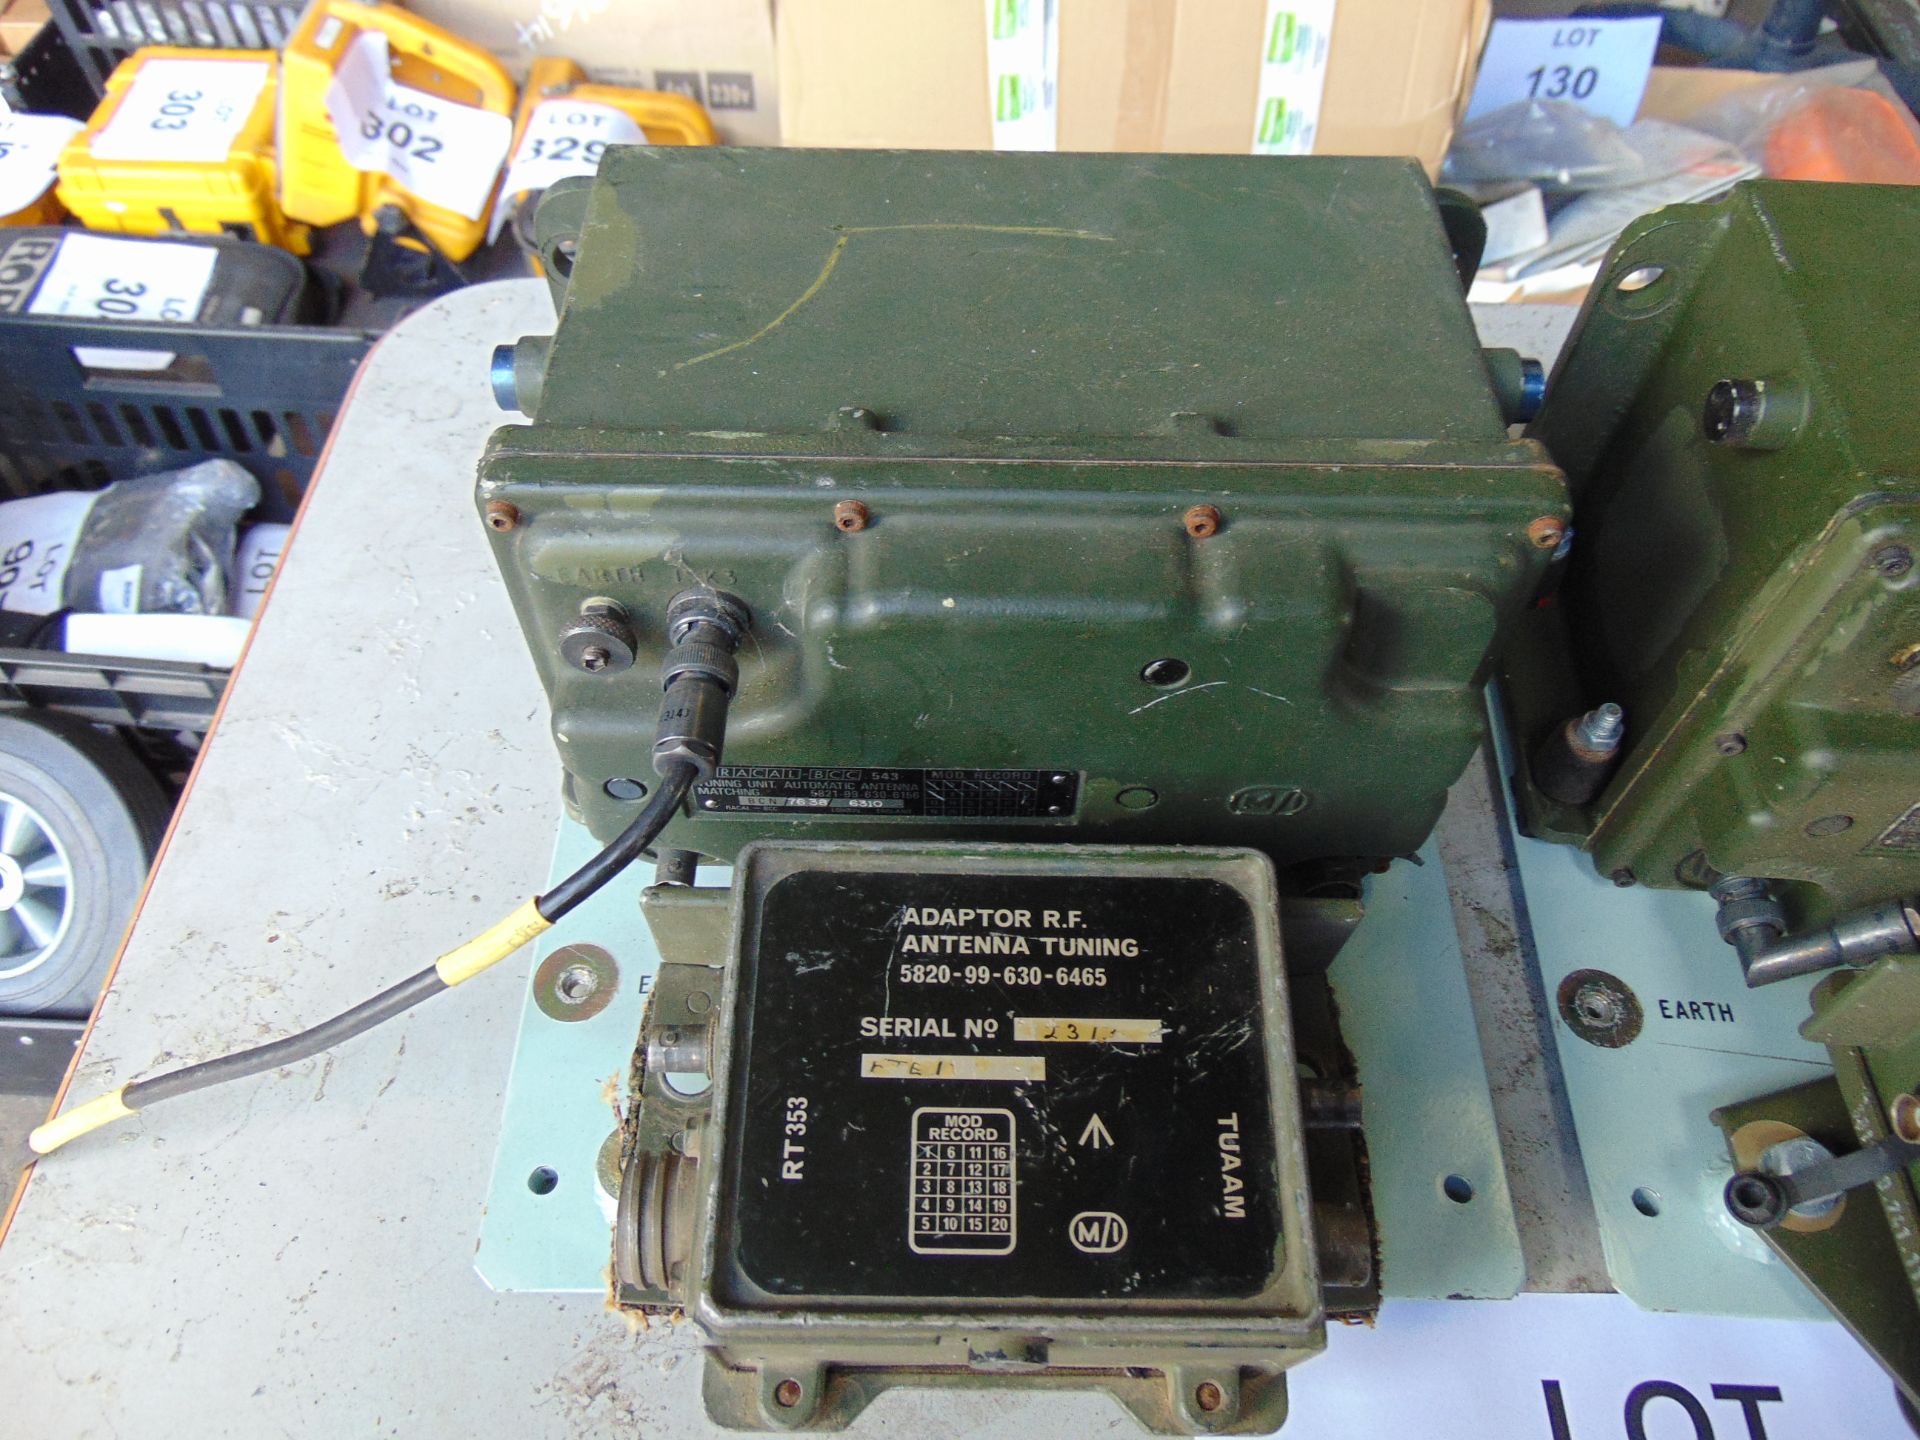 2 x Clansman Antenna Tuning unit with vehicle bracket - Image 3 of 5